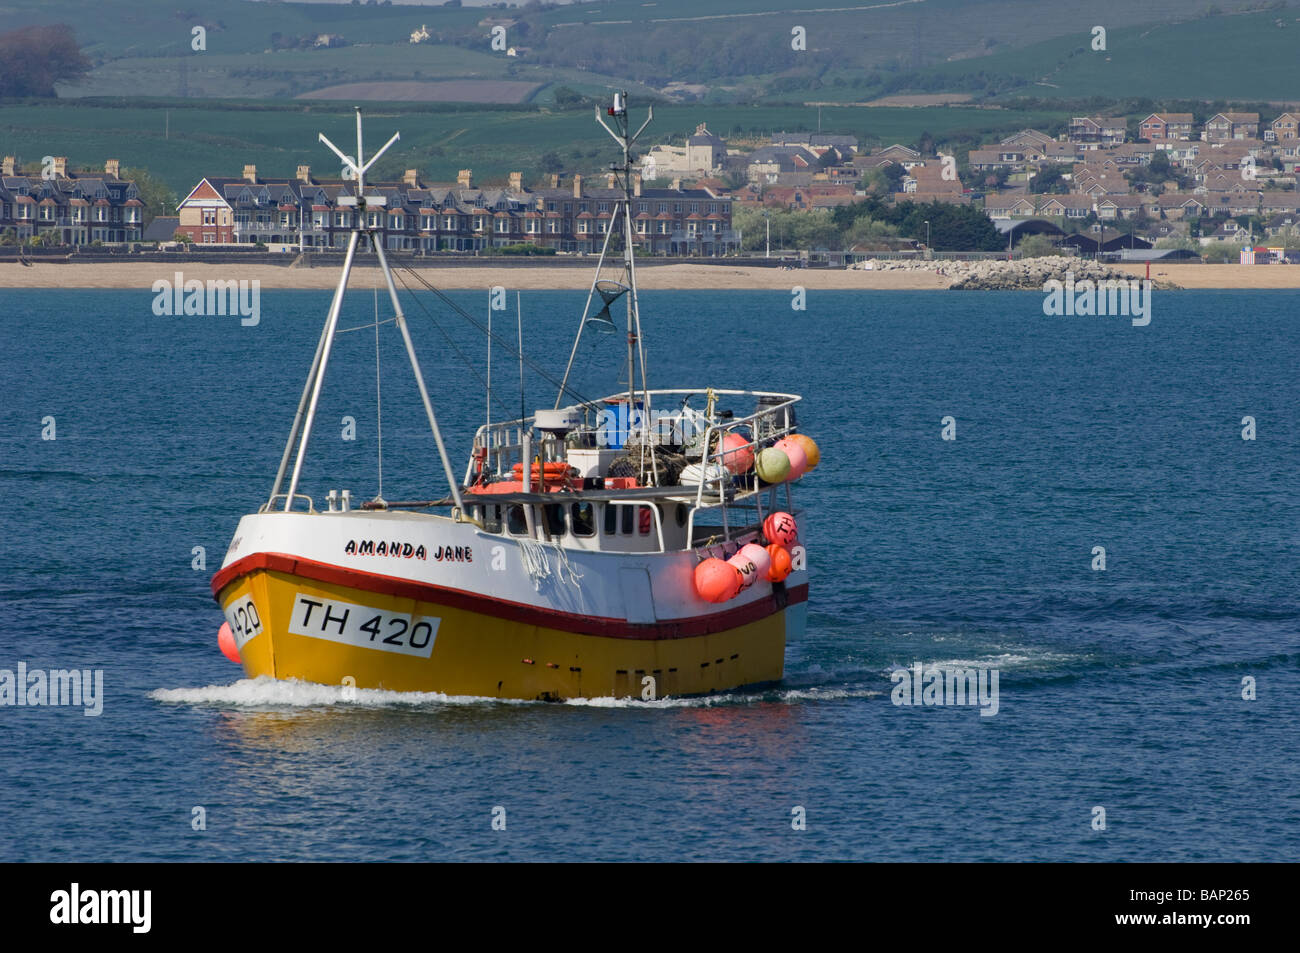 Chalutier de pêche E420, le "Amanda Jane", en mer au large de la côte de Weymouth, dans le Dorset, Angleterre. Banque D'Images